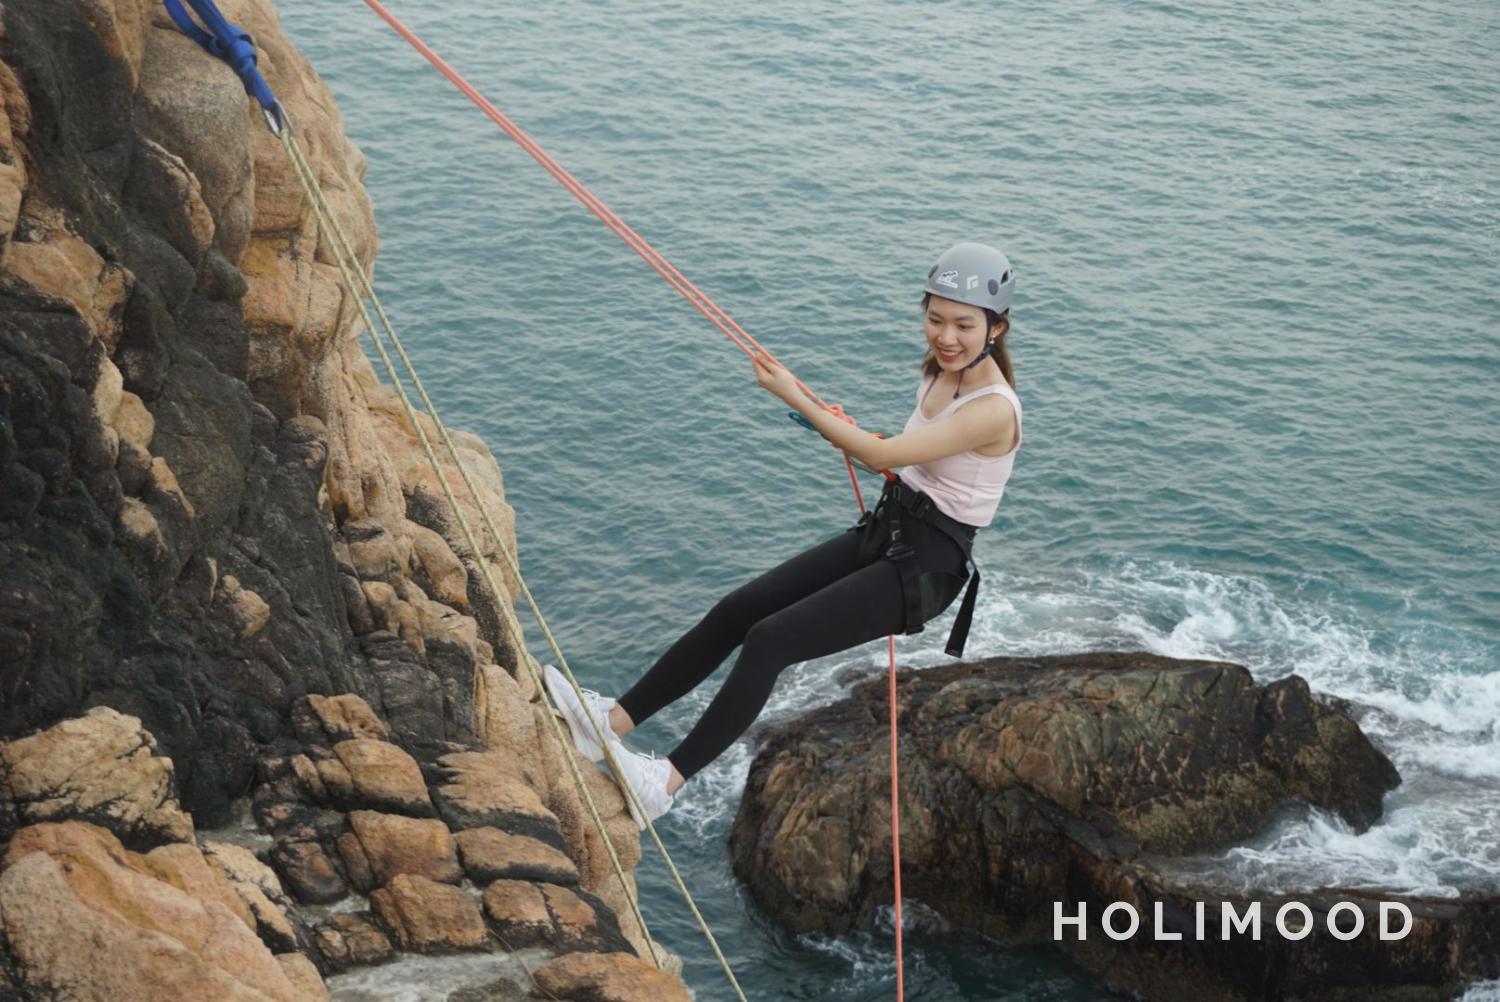 Explorer Hong Kong 【石澳】飛索、攀岩及沿繩下降體驗 - 私人包團 (8人起) 10